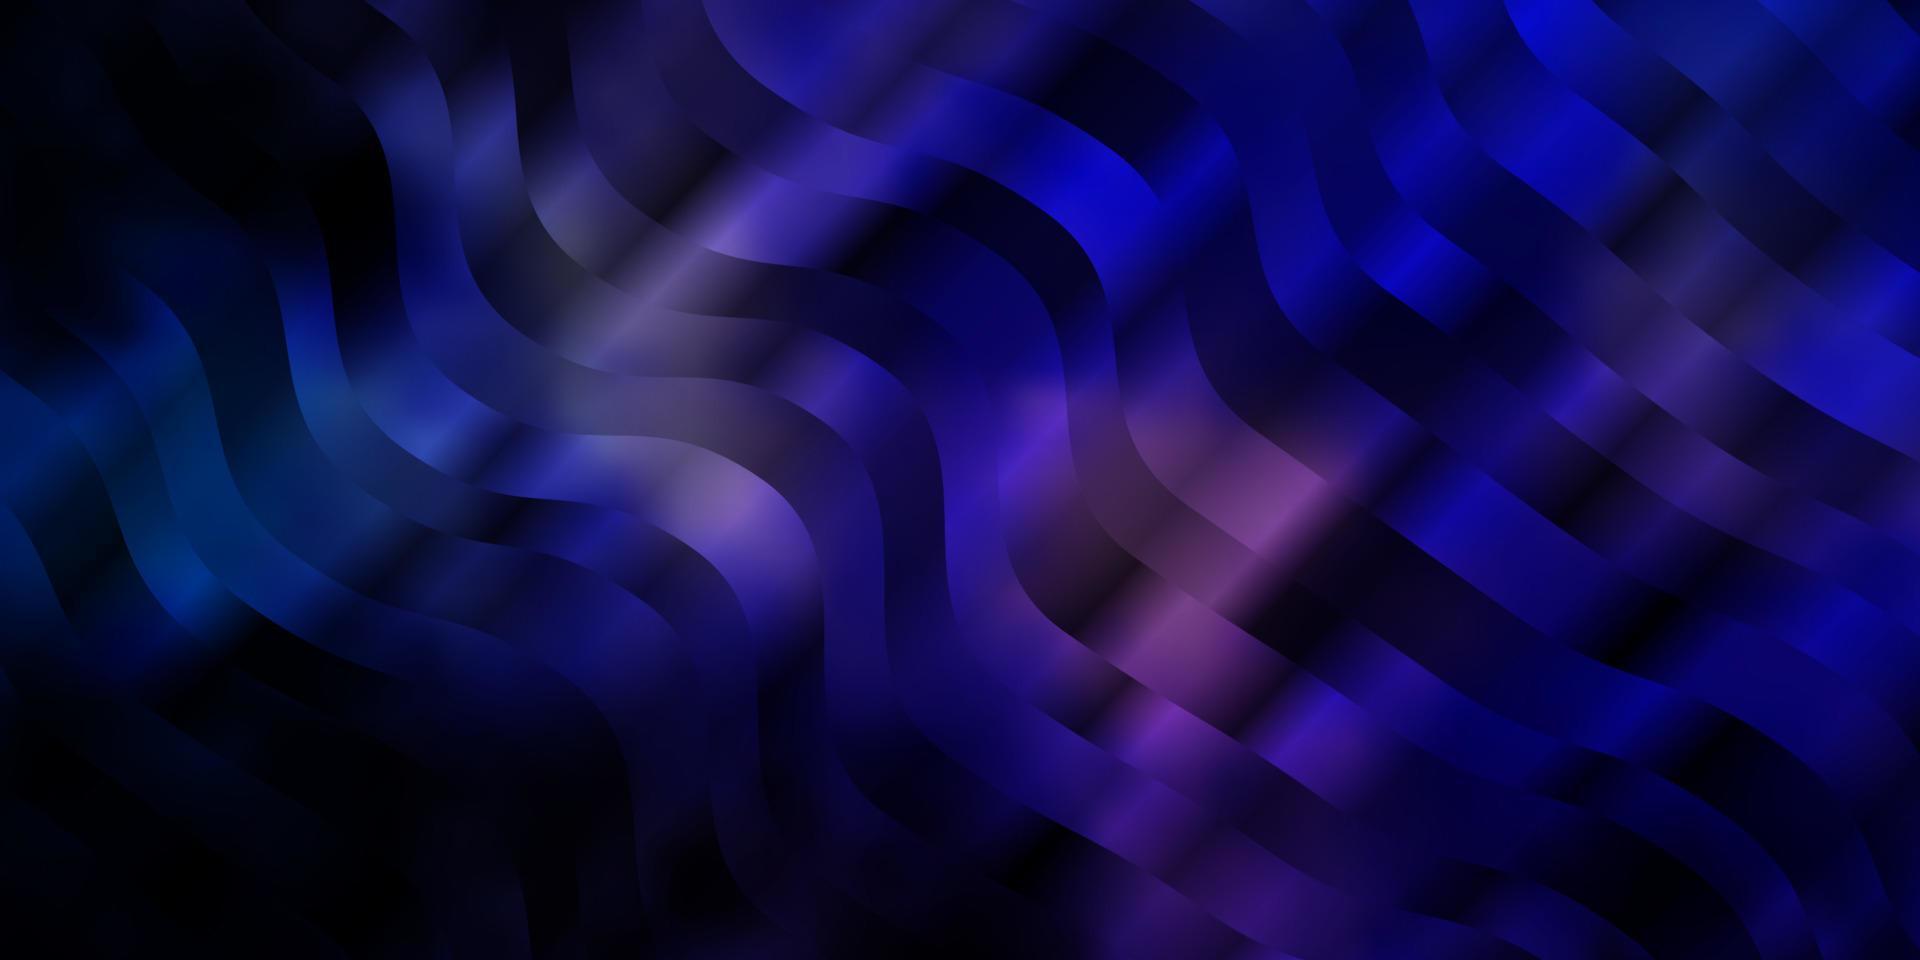 mörkrosa, blå vektorlayout med sneda linjer. vektor